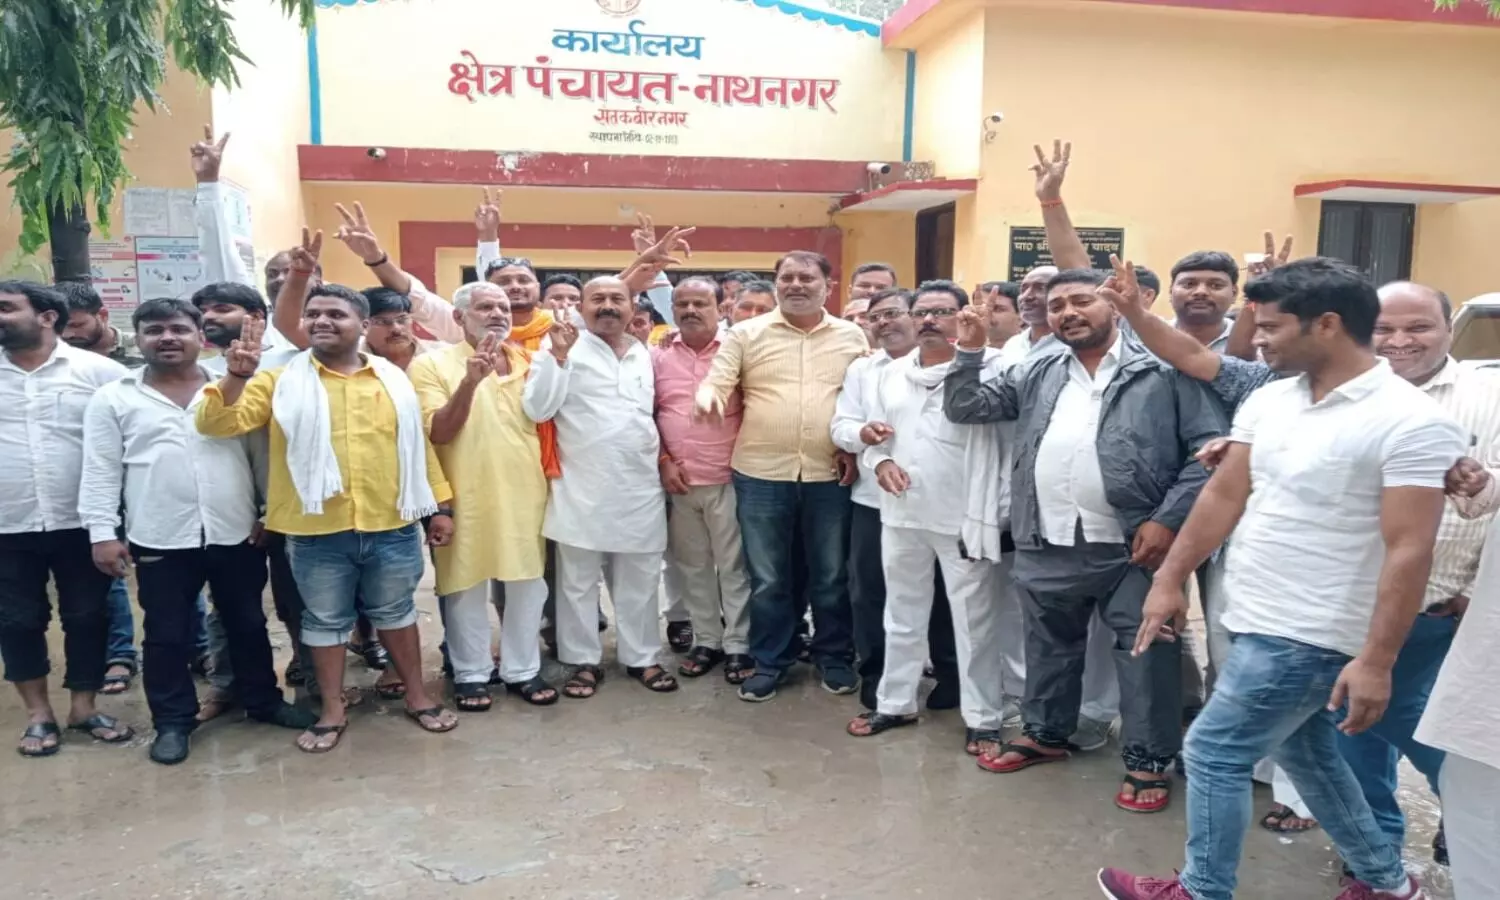 Sant Kabir Nagar: भ्रष्टाचारी बीडीओ के खिलाफ प्रधान संघ ने जीती जंग, श्वेता वर्मा बनी नाथनगर की नई बीडीओ